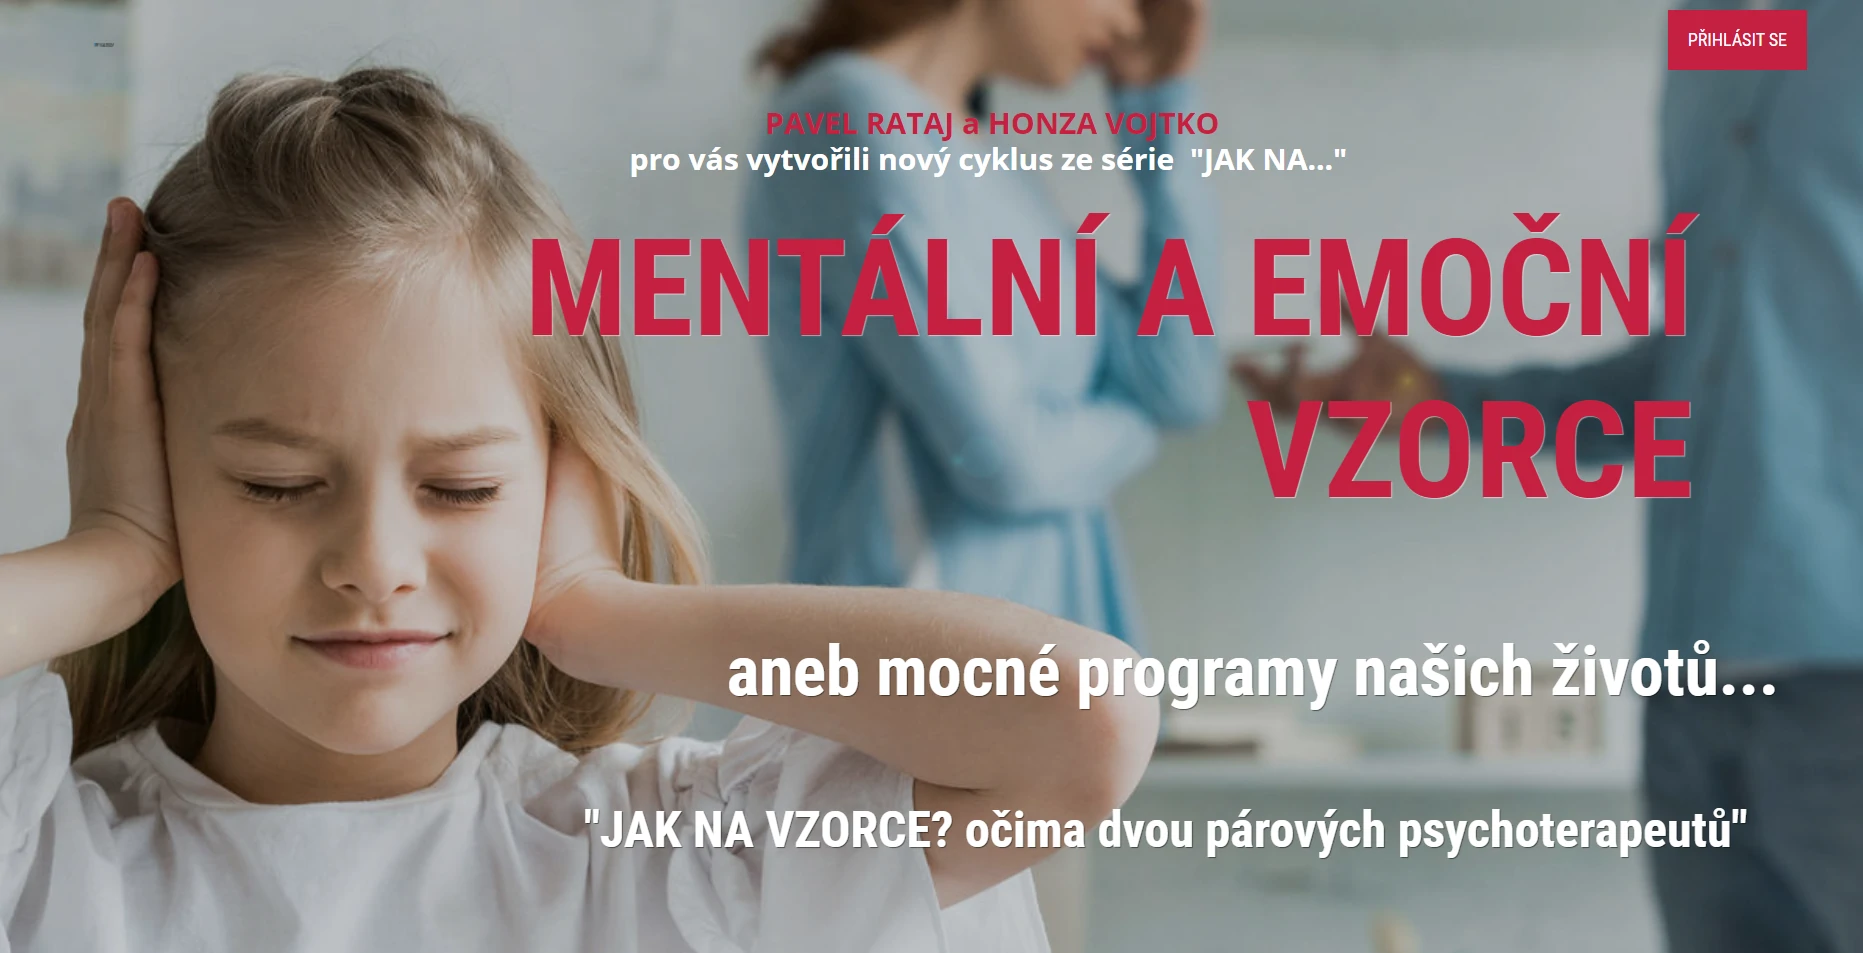 MENTÁLNÍ A EMOČNÍ VZORCE - www.pavelrataj.cz